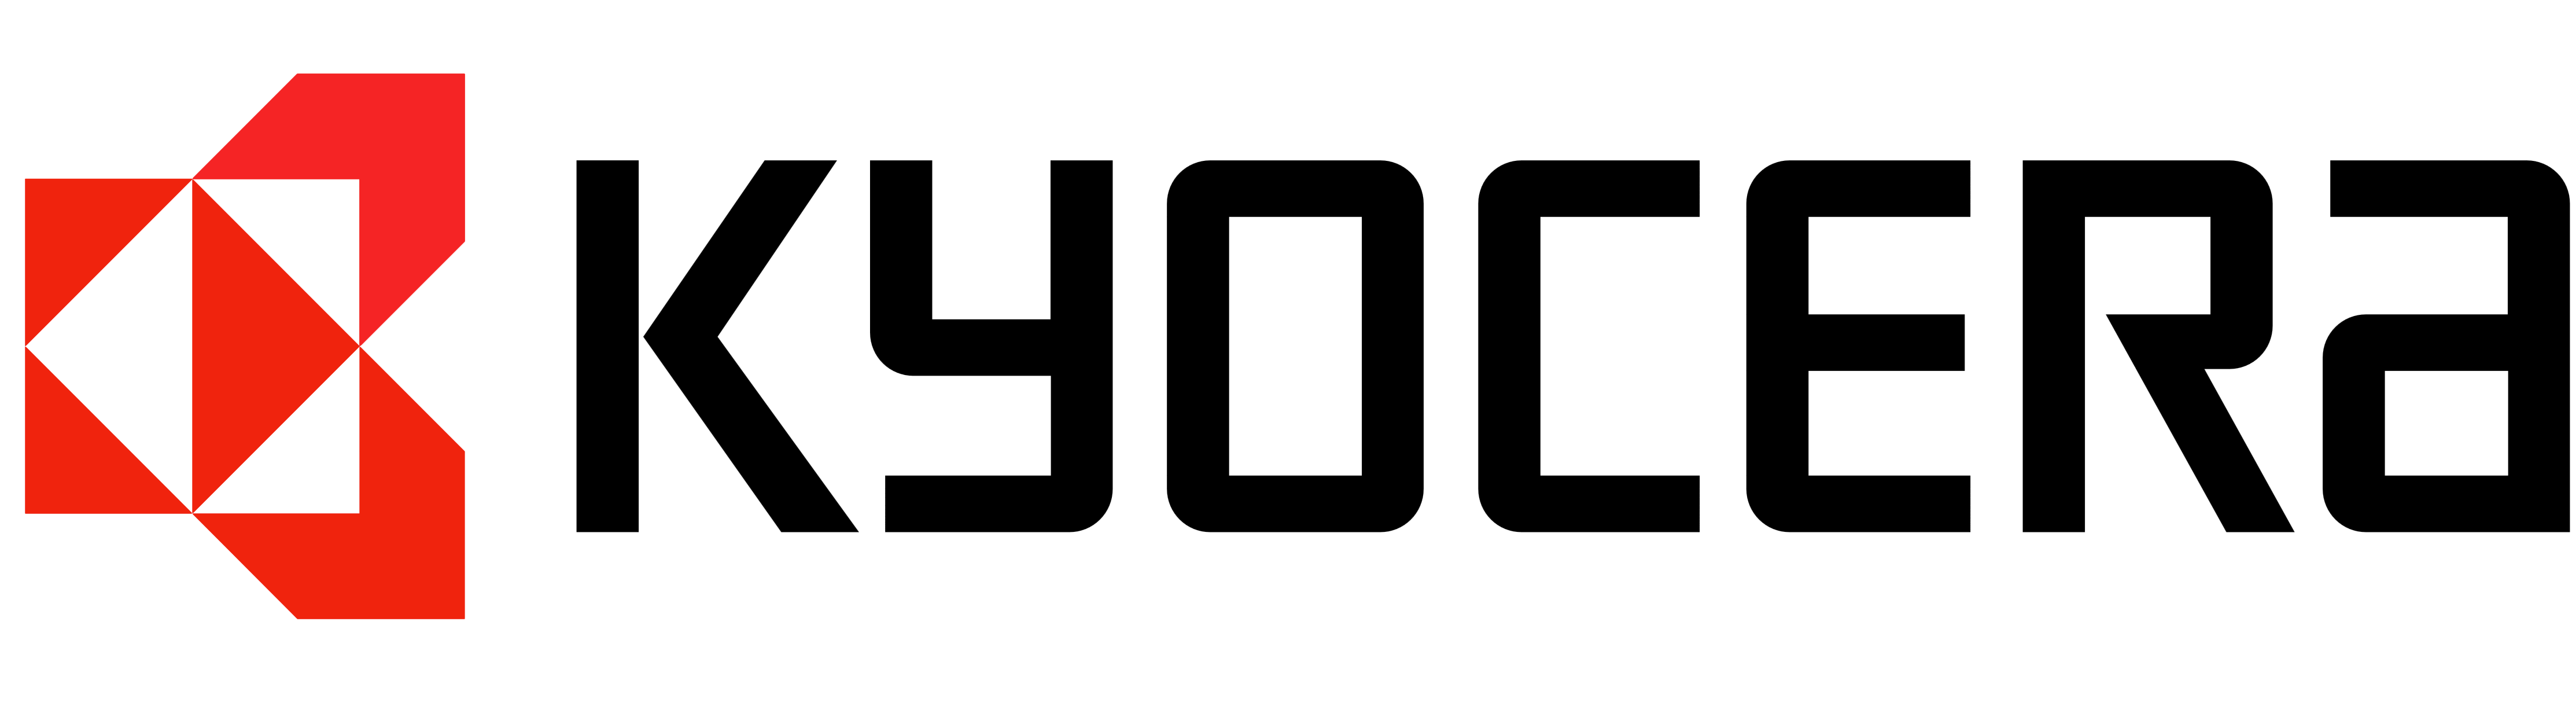 Kyocera Mita vector logo - Ky